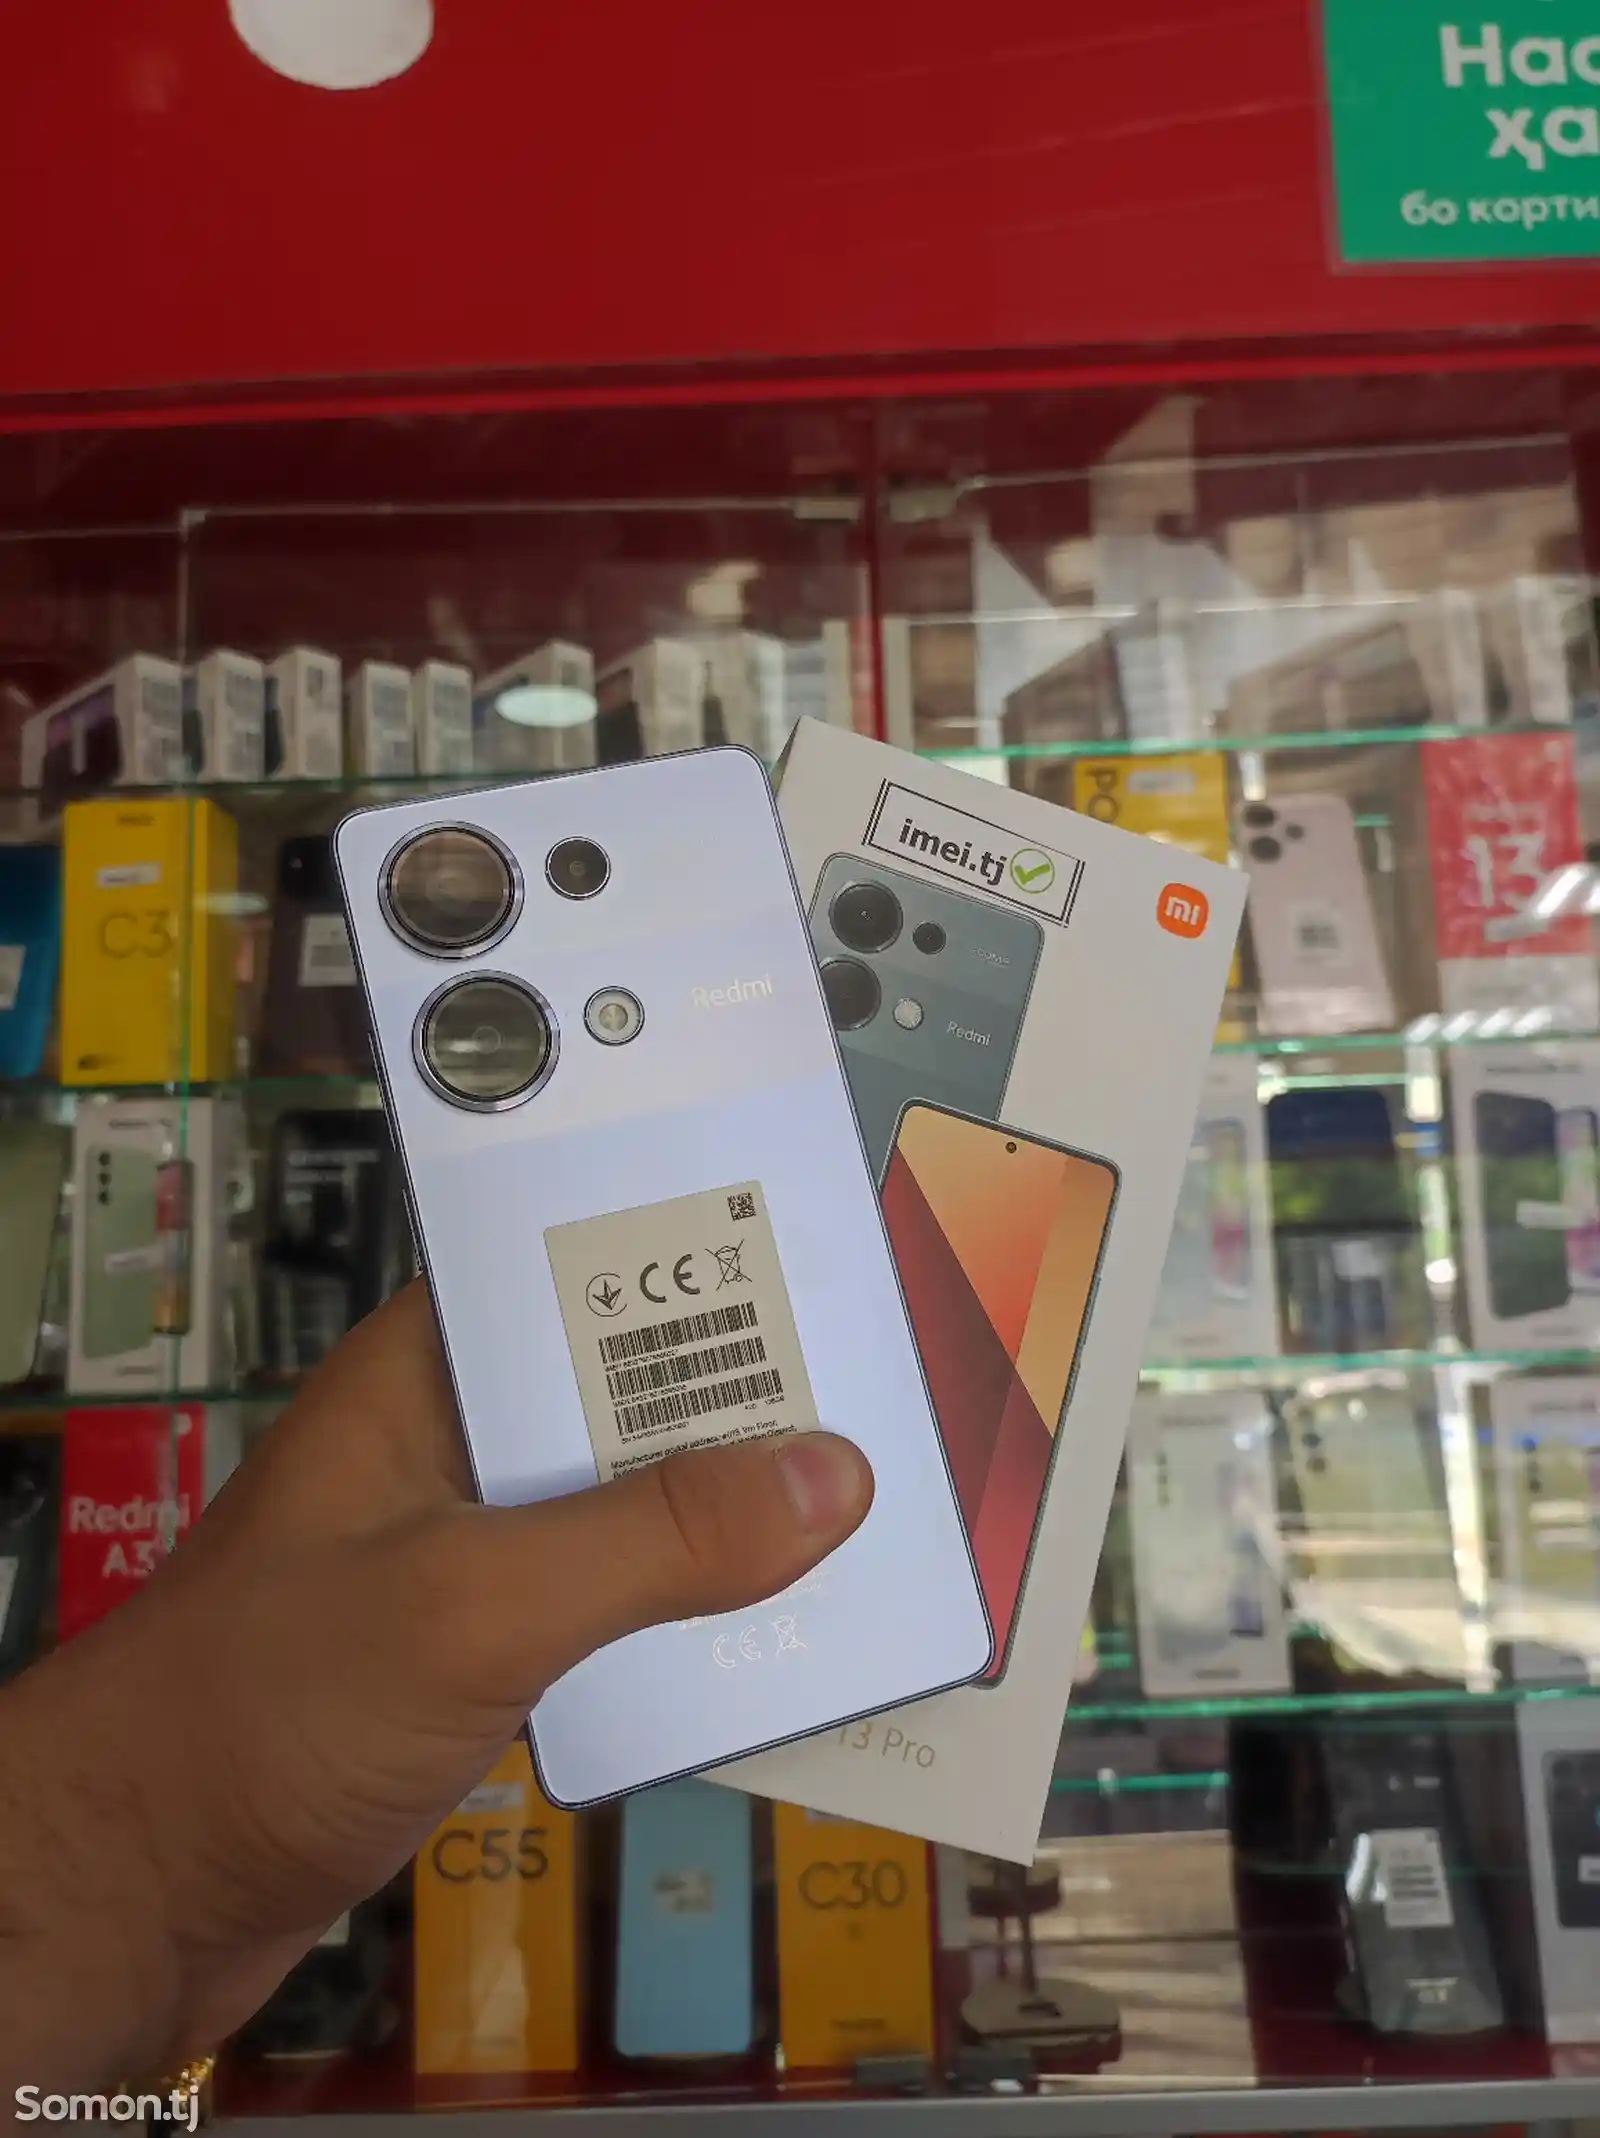 Xiaomi Redmi Note 13 pro-3